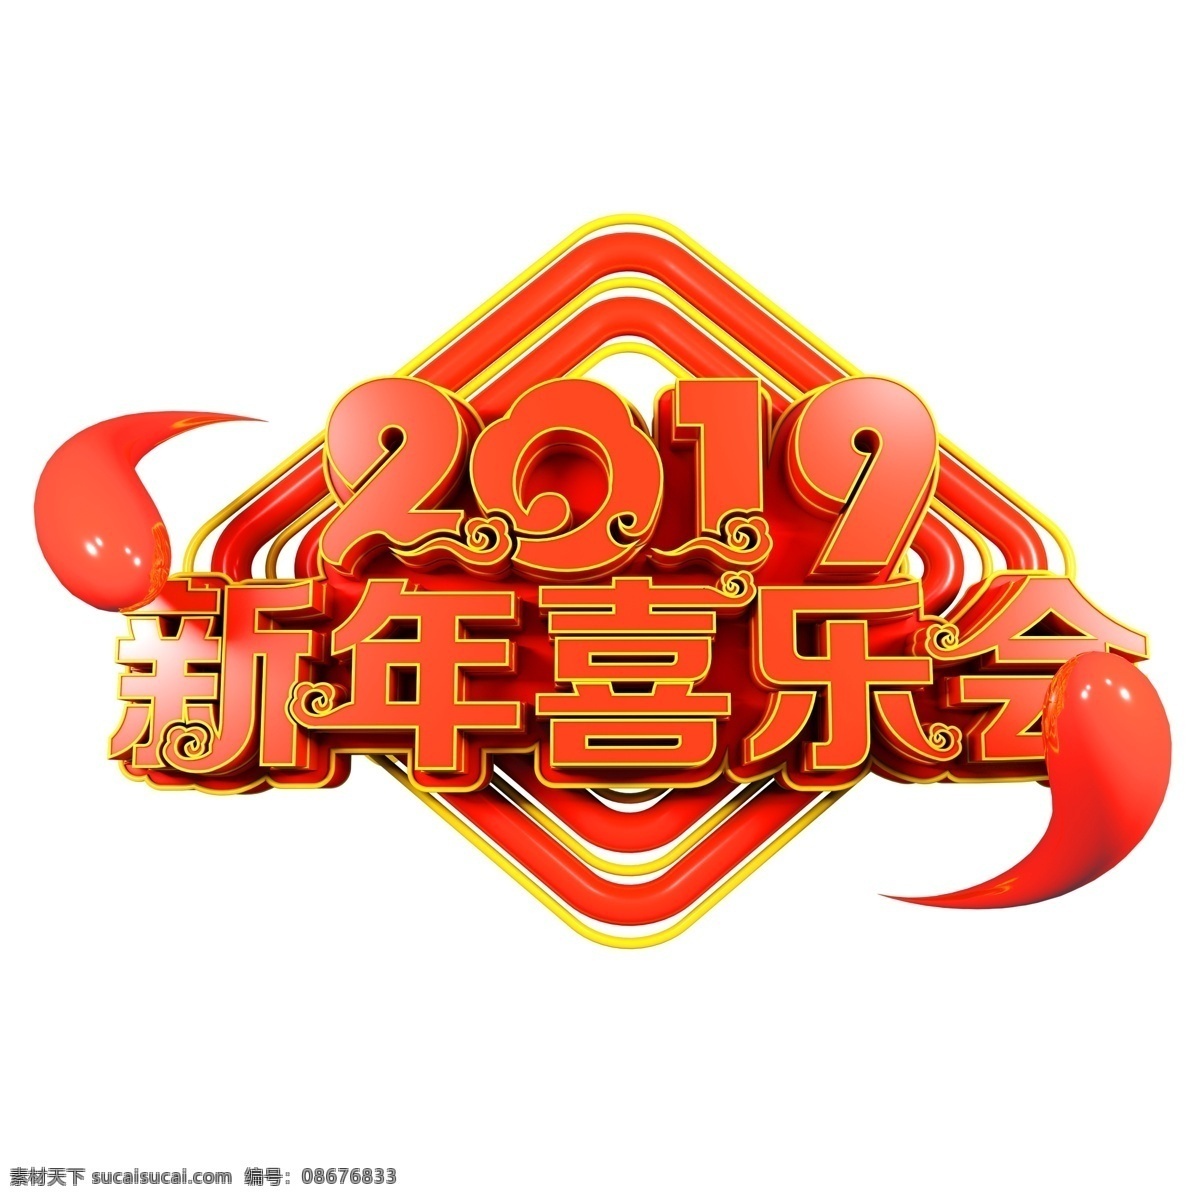 2019 新年 喜乐 会 字体 元素 中国风 喜庆 祥云 新年快乐 装饰图案 红色字体 元素装饰 元素设计 创意元素 手绘元素 psd元素